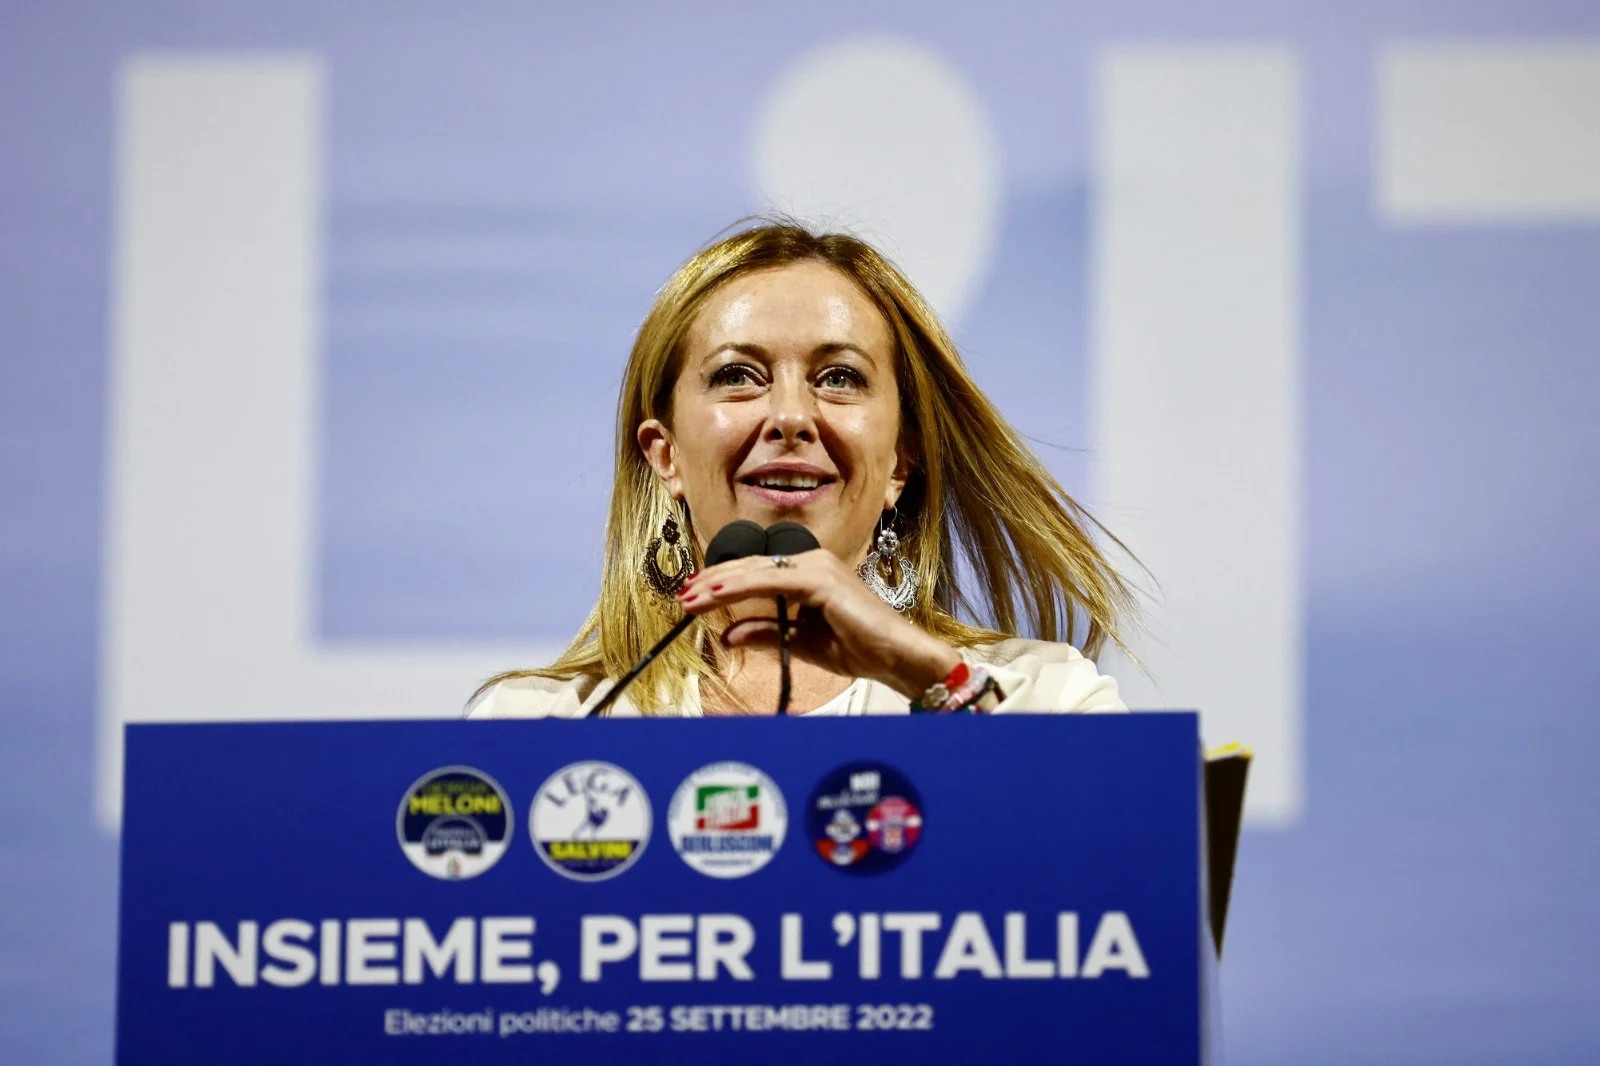 ג'ורג'יה מלוני, צפויה להיות האישה הראשונה כראש ממשלת איטליה